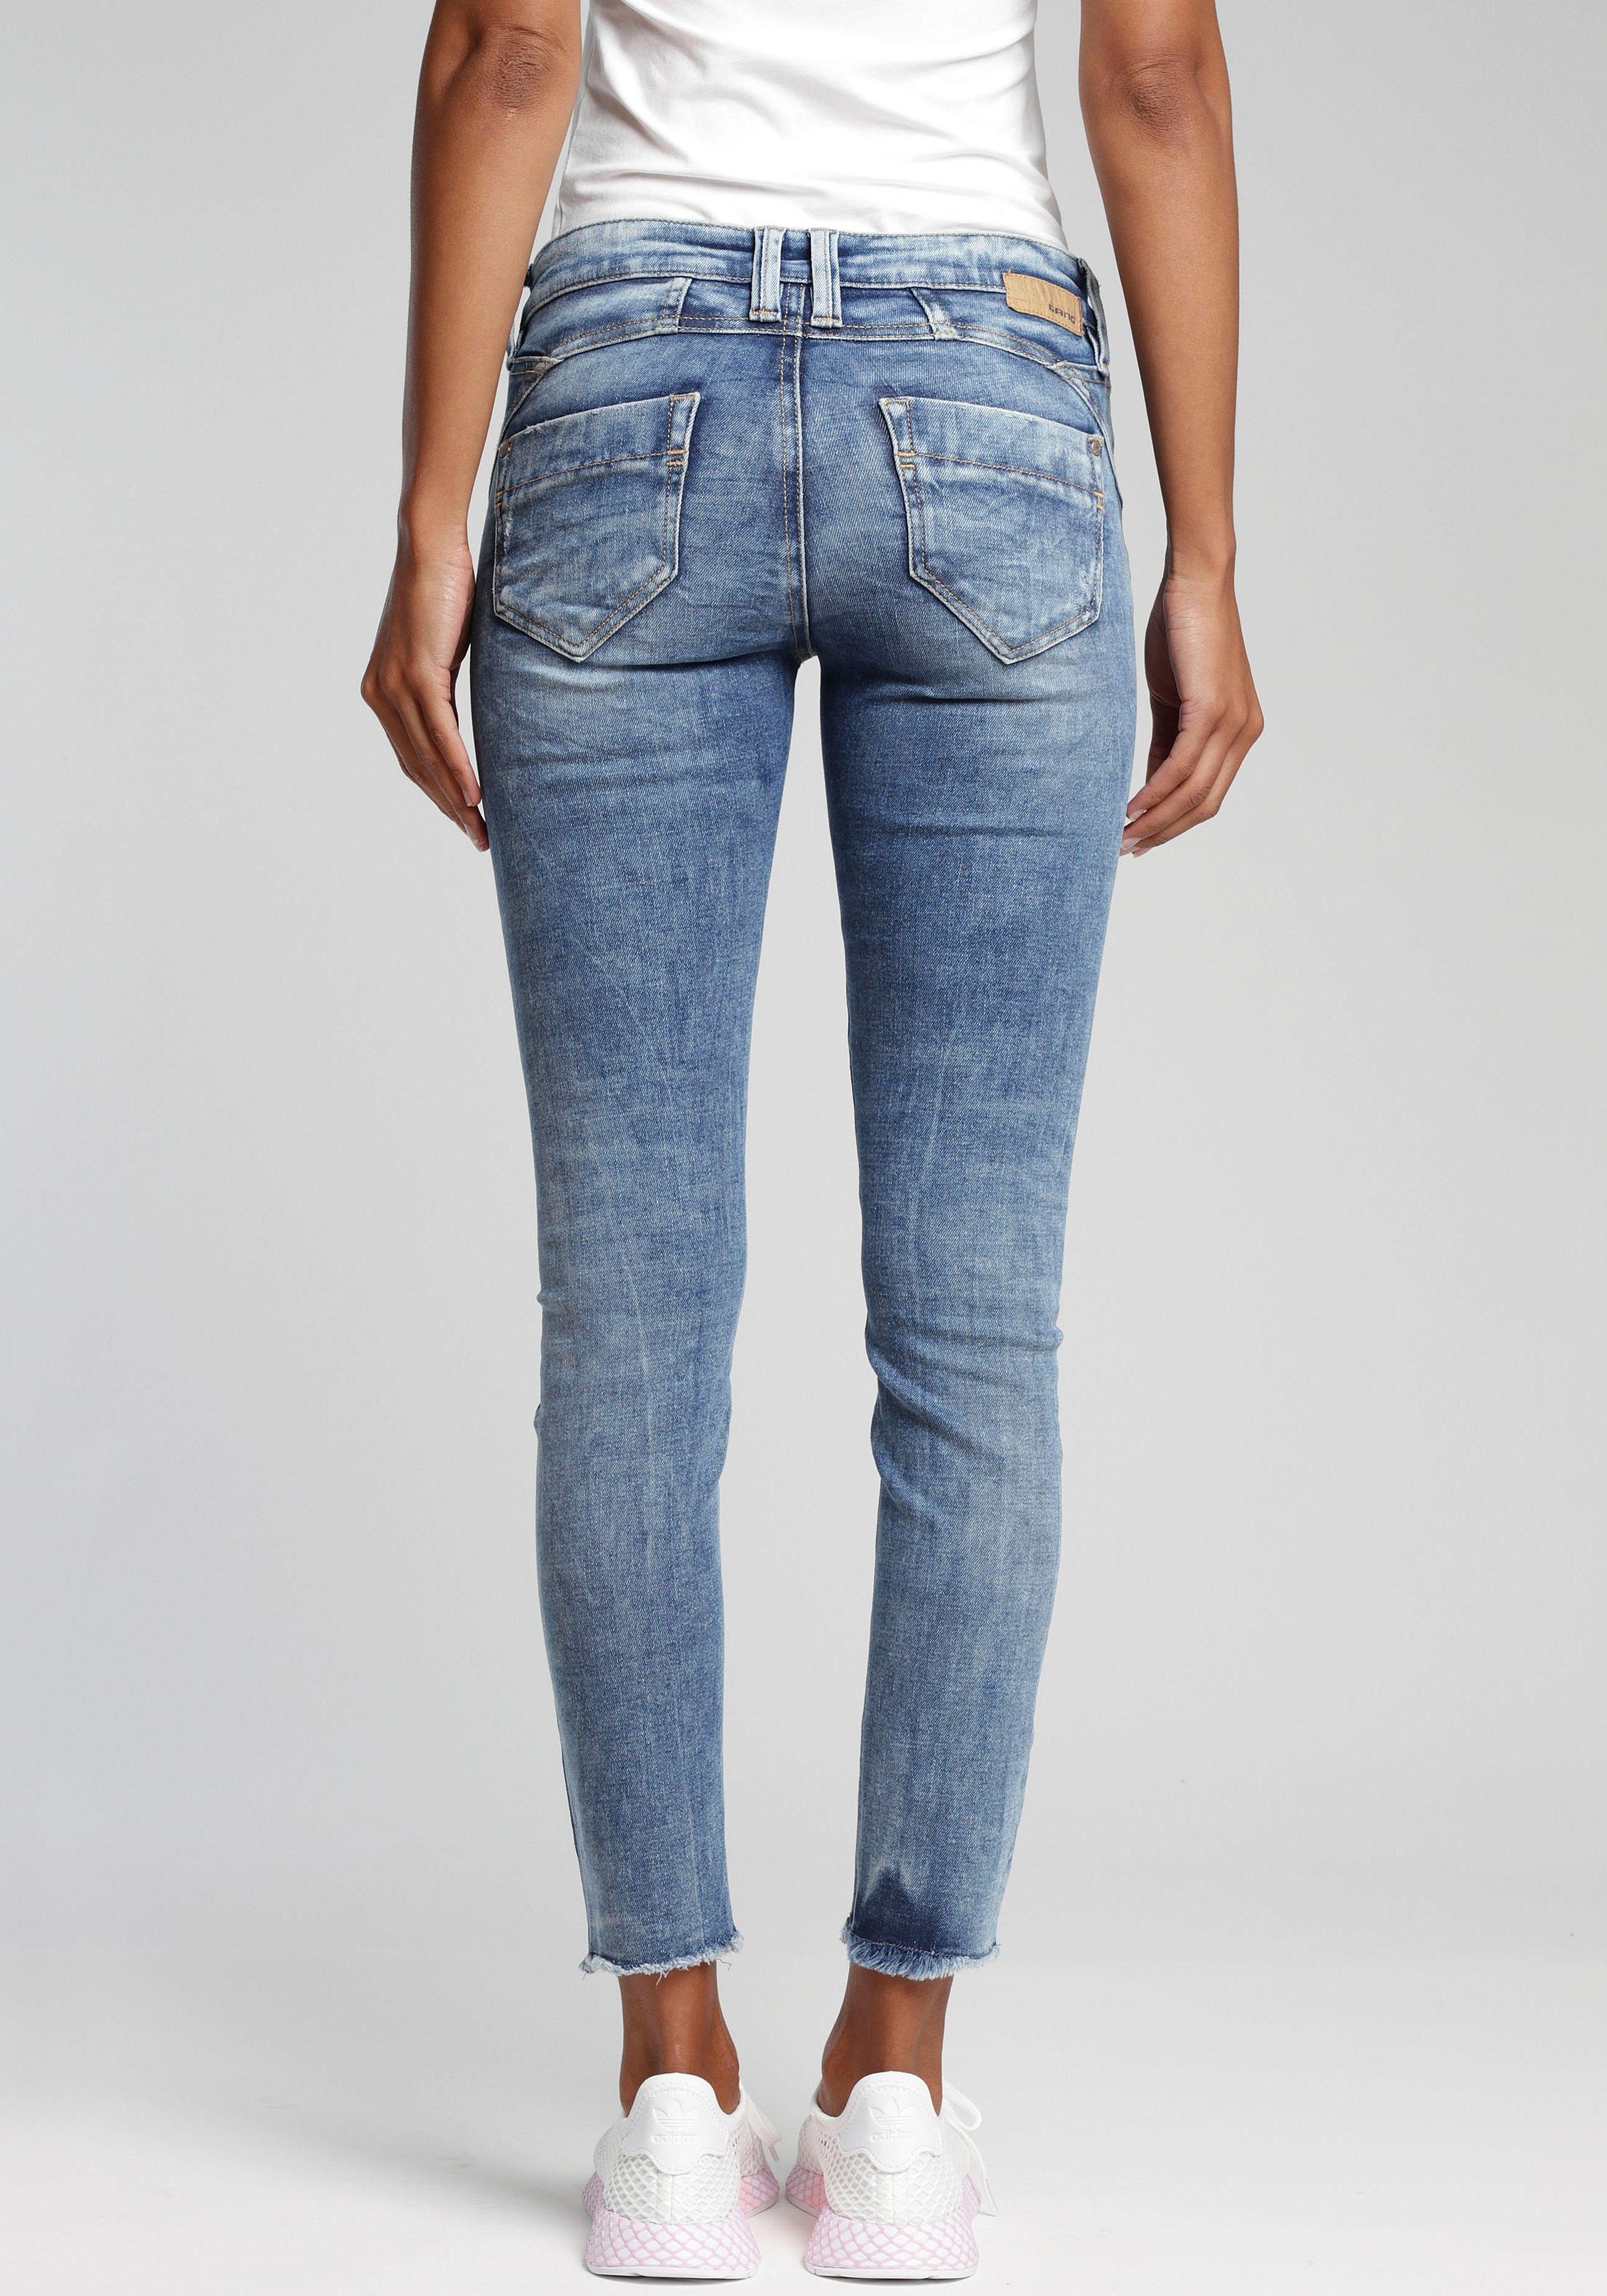 Jeans Größe 42 online kaufen | OTTO